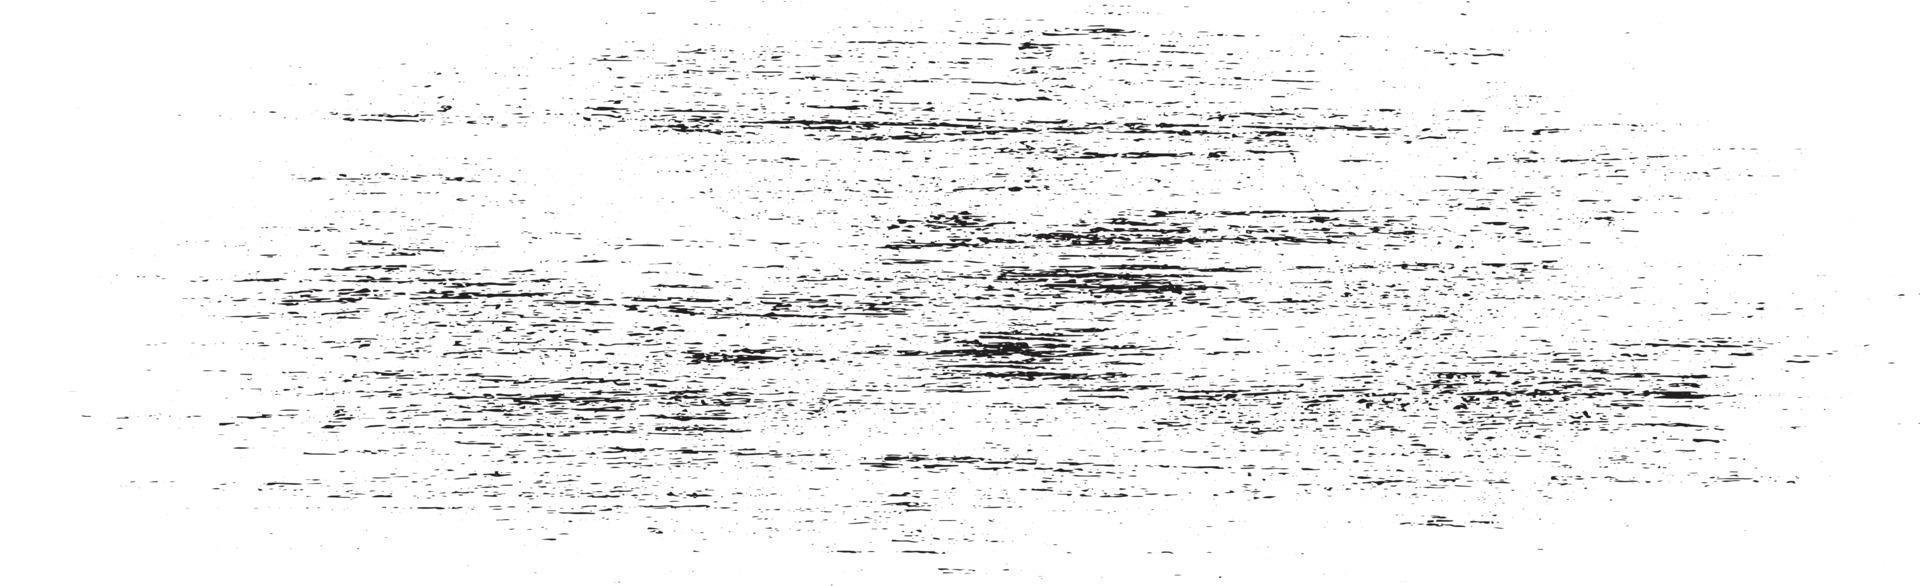 muitos salpicos brancos no fundo branco panorâmico - vetor